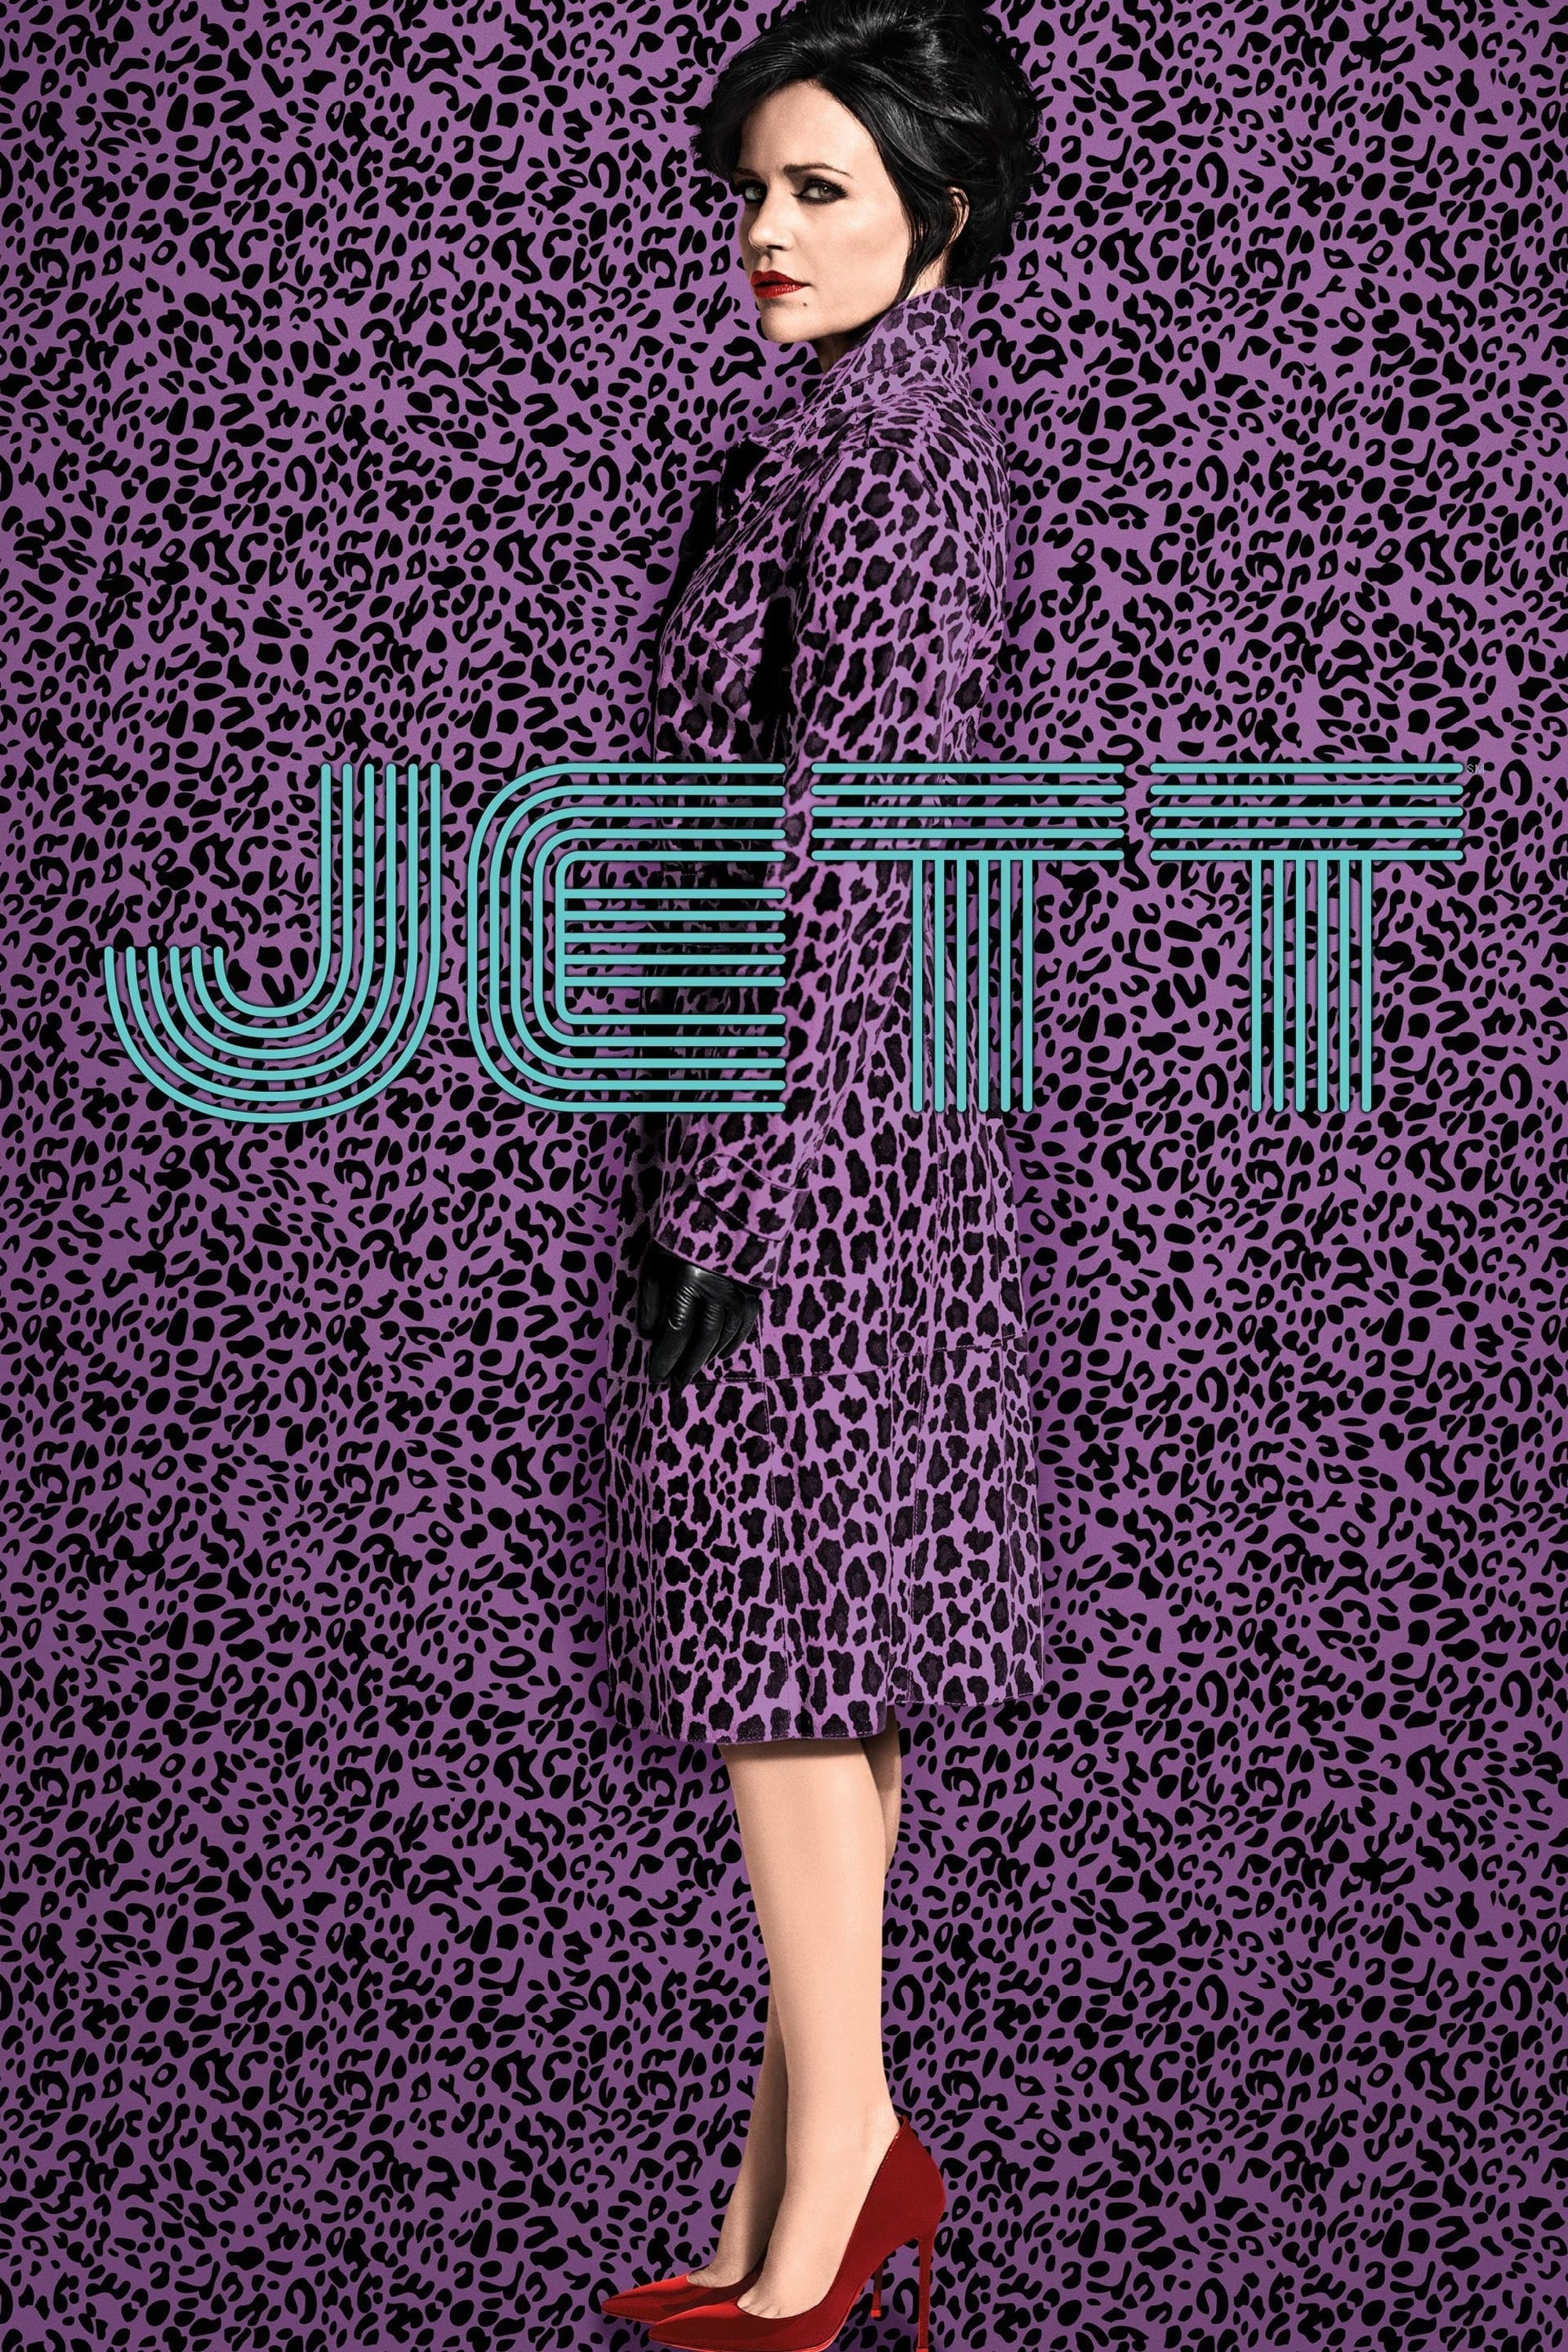 Jett rating